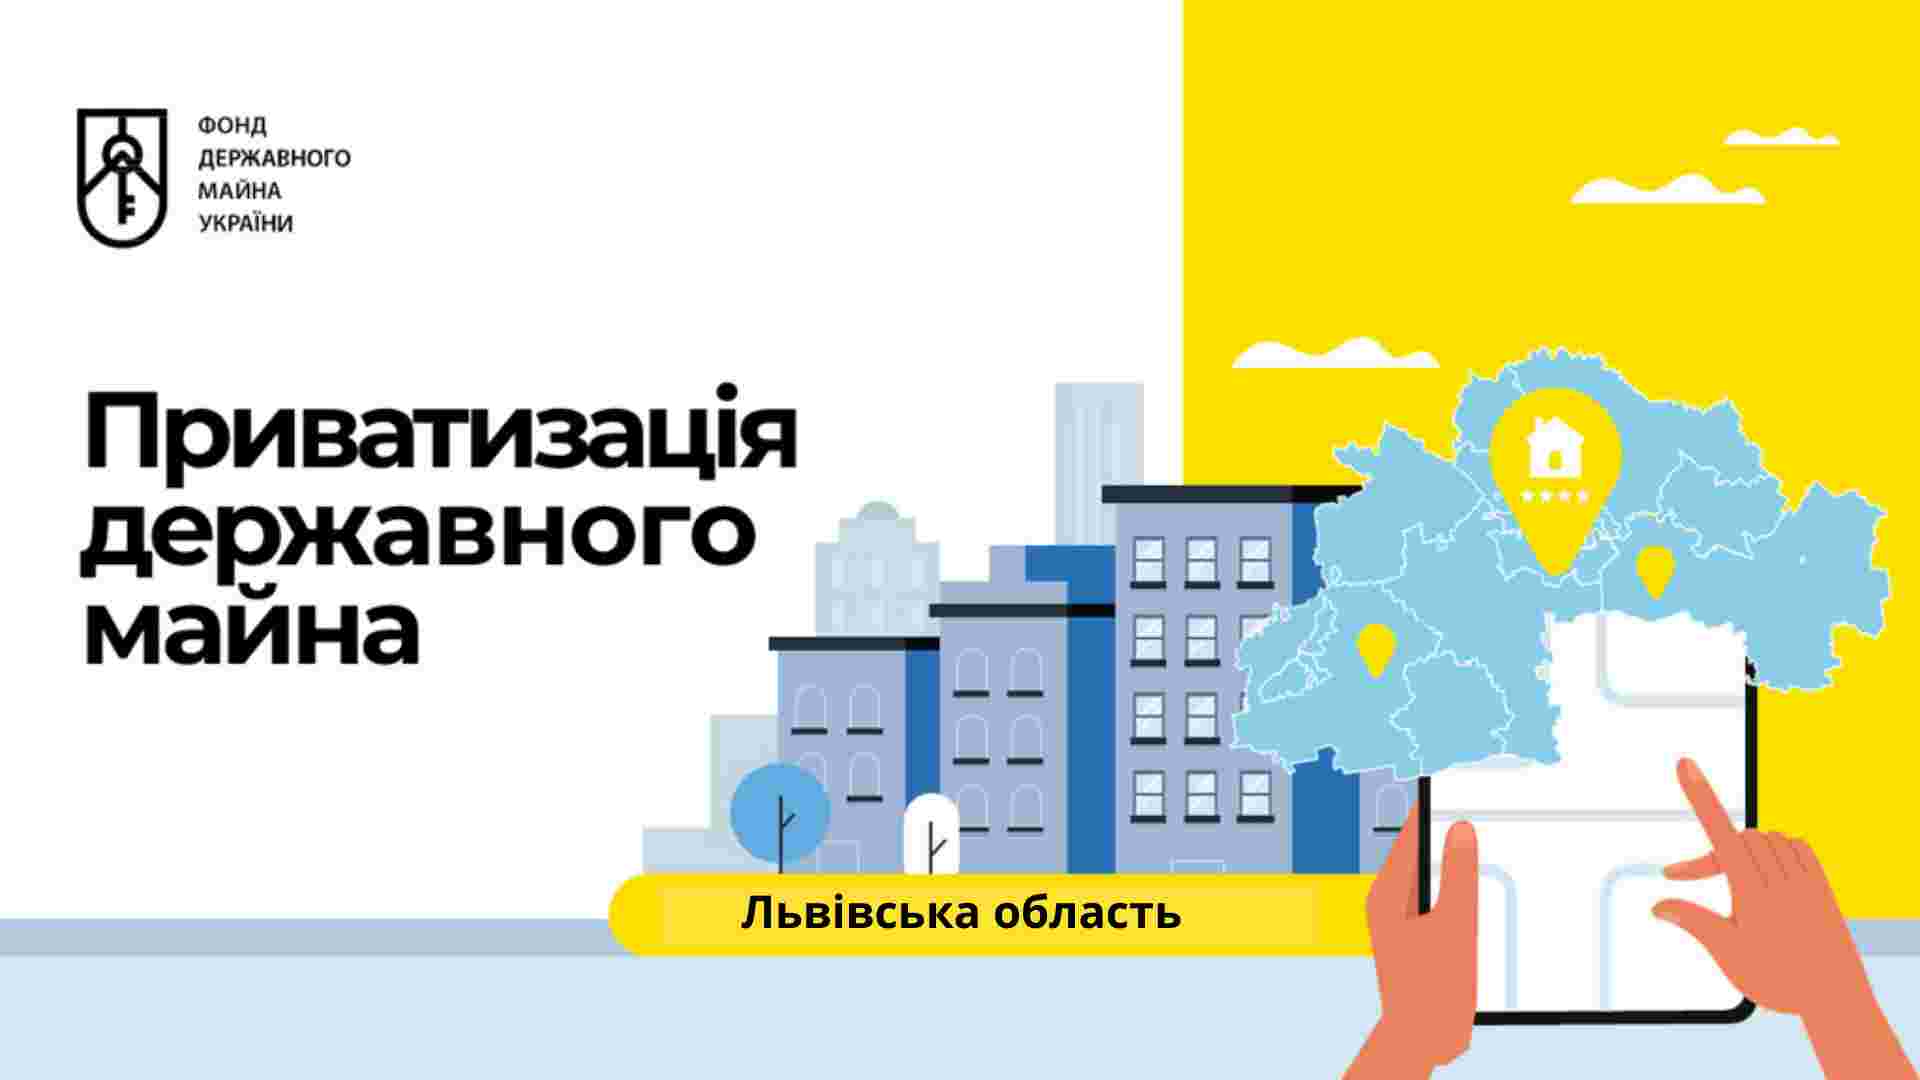 Лідер із приватизації: які уроки може дати Львів іншим містам України у продажі державного та комунального майна?